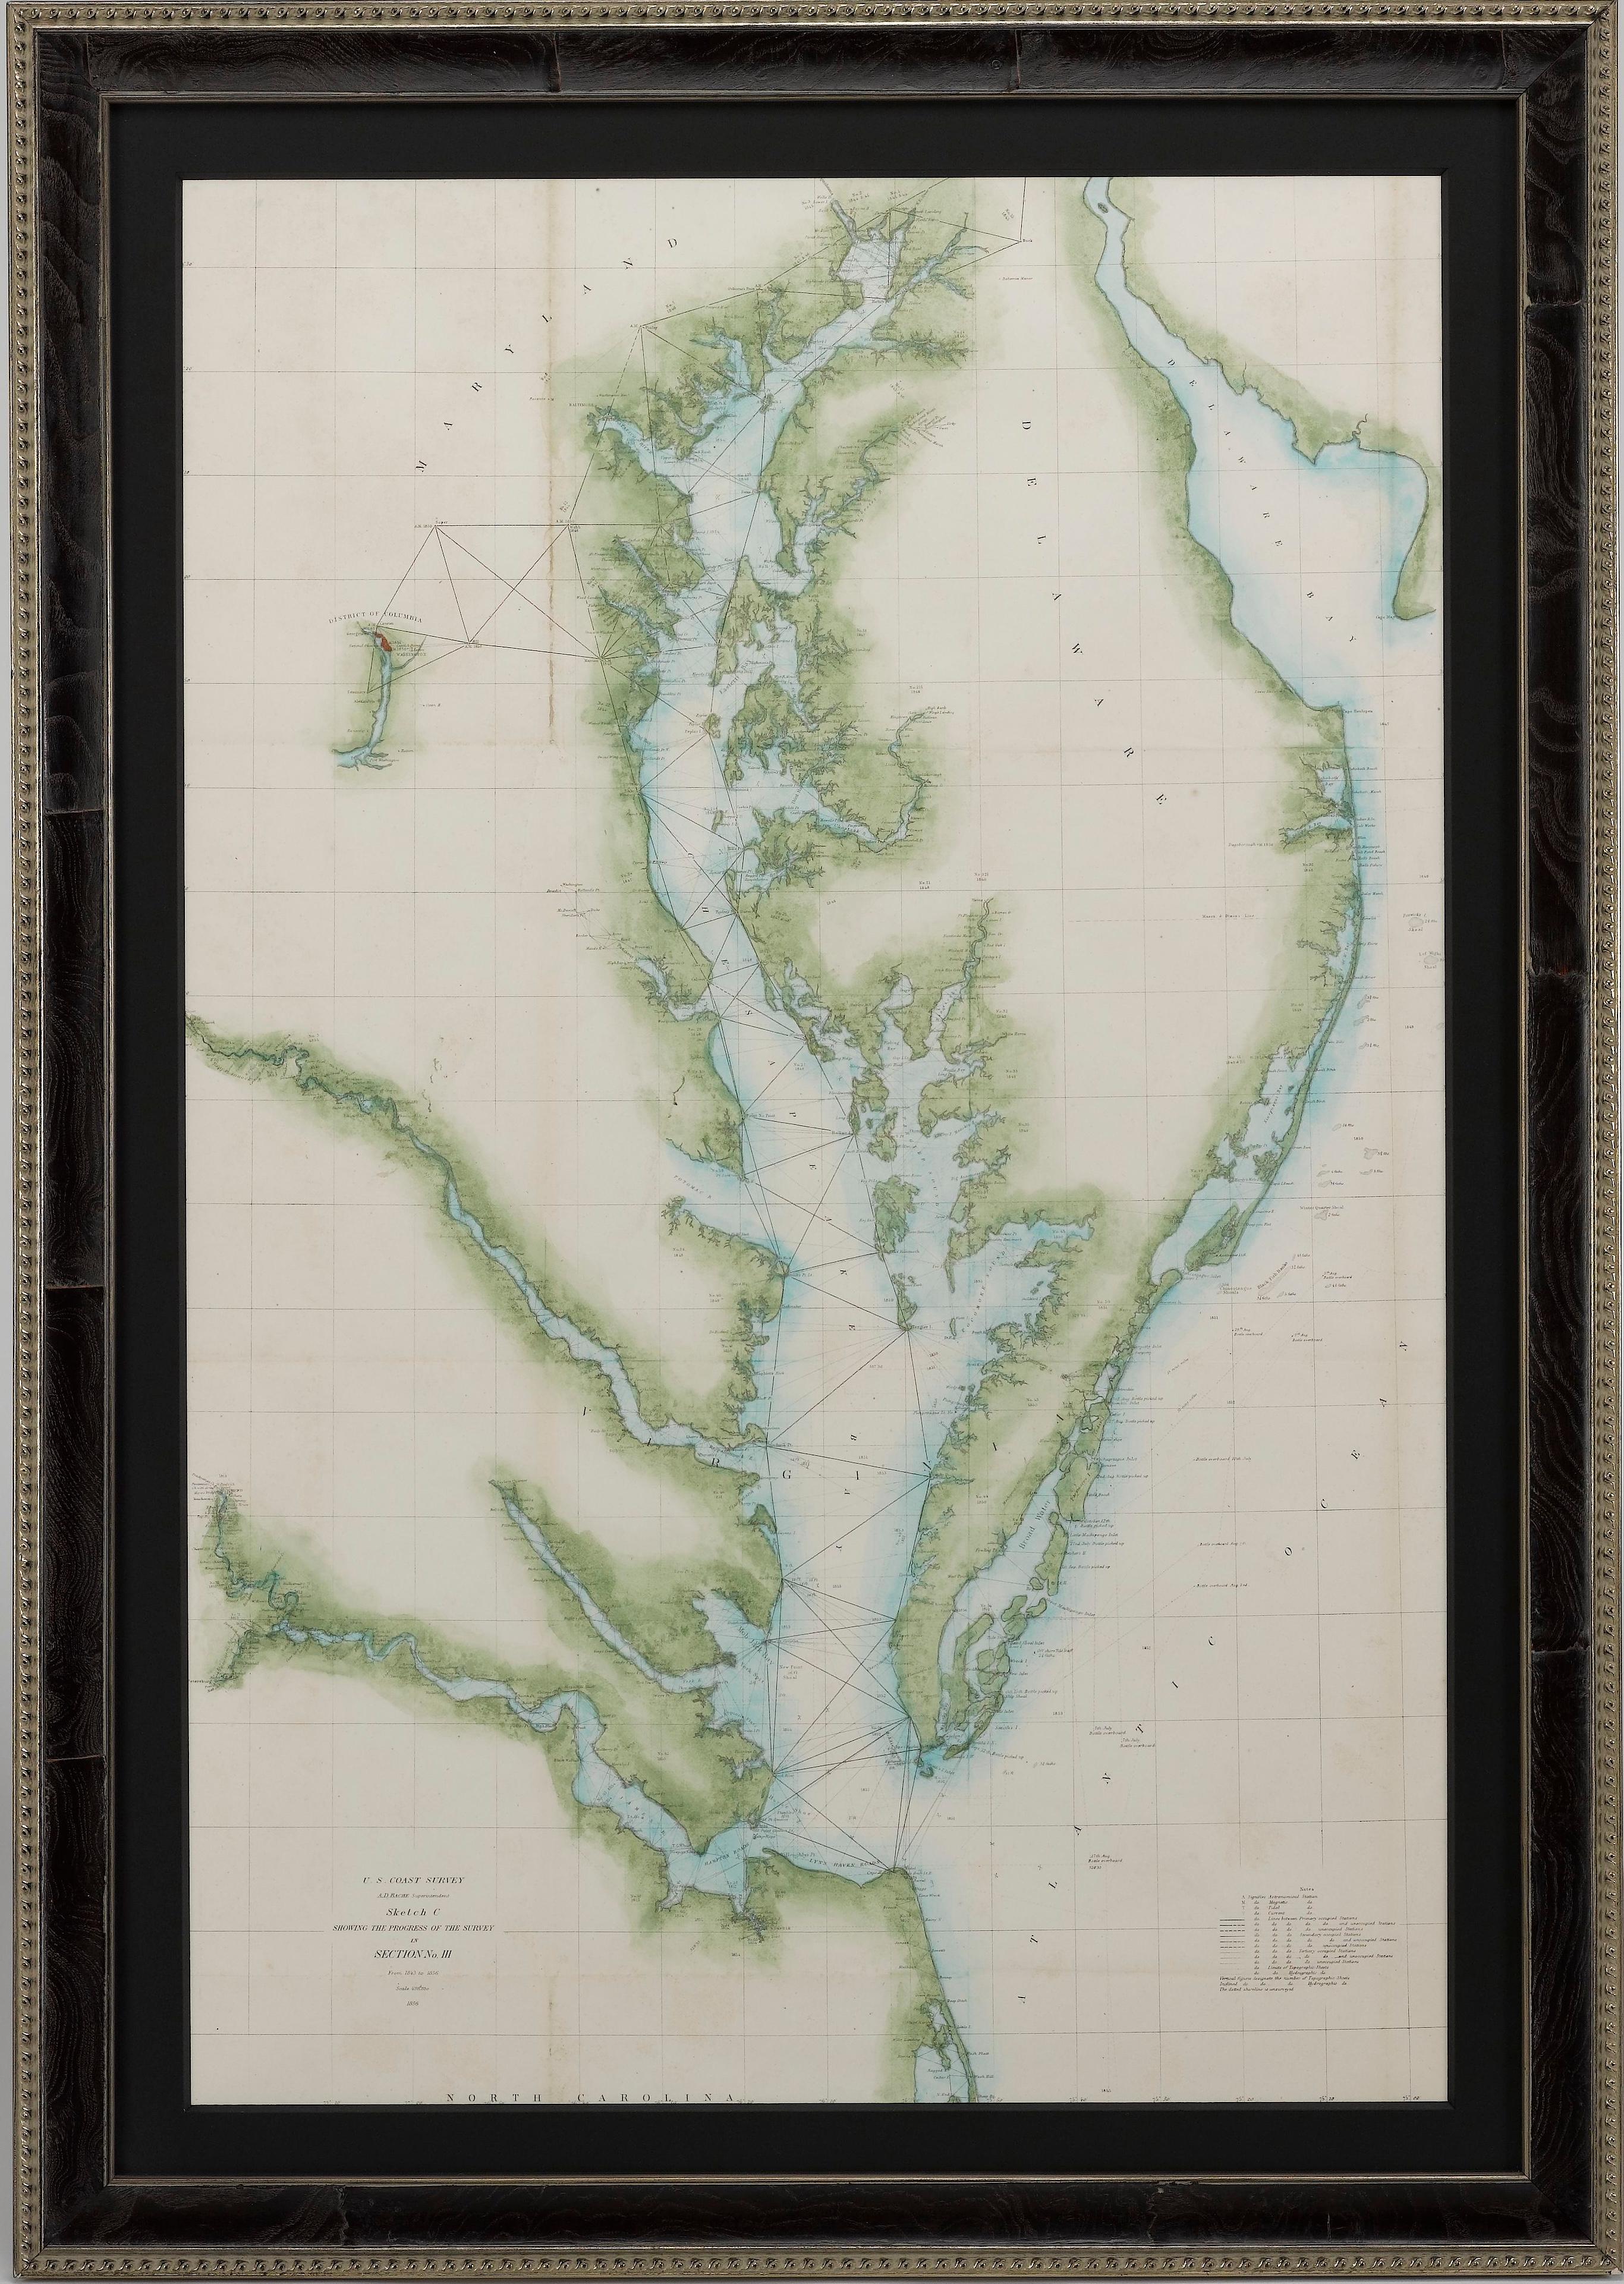 Es handelt sich um eine Seekarte des U.S. Coast Survey für die Chesapeake Bay und die Delaware Bay aus dem Jahr 1856. Die Karte zeigt die Region von Susquehanna, Maryland, bis zu den nördlichen Outer Banks in North Carolina. Sie reicht außerdem von